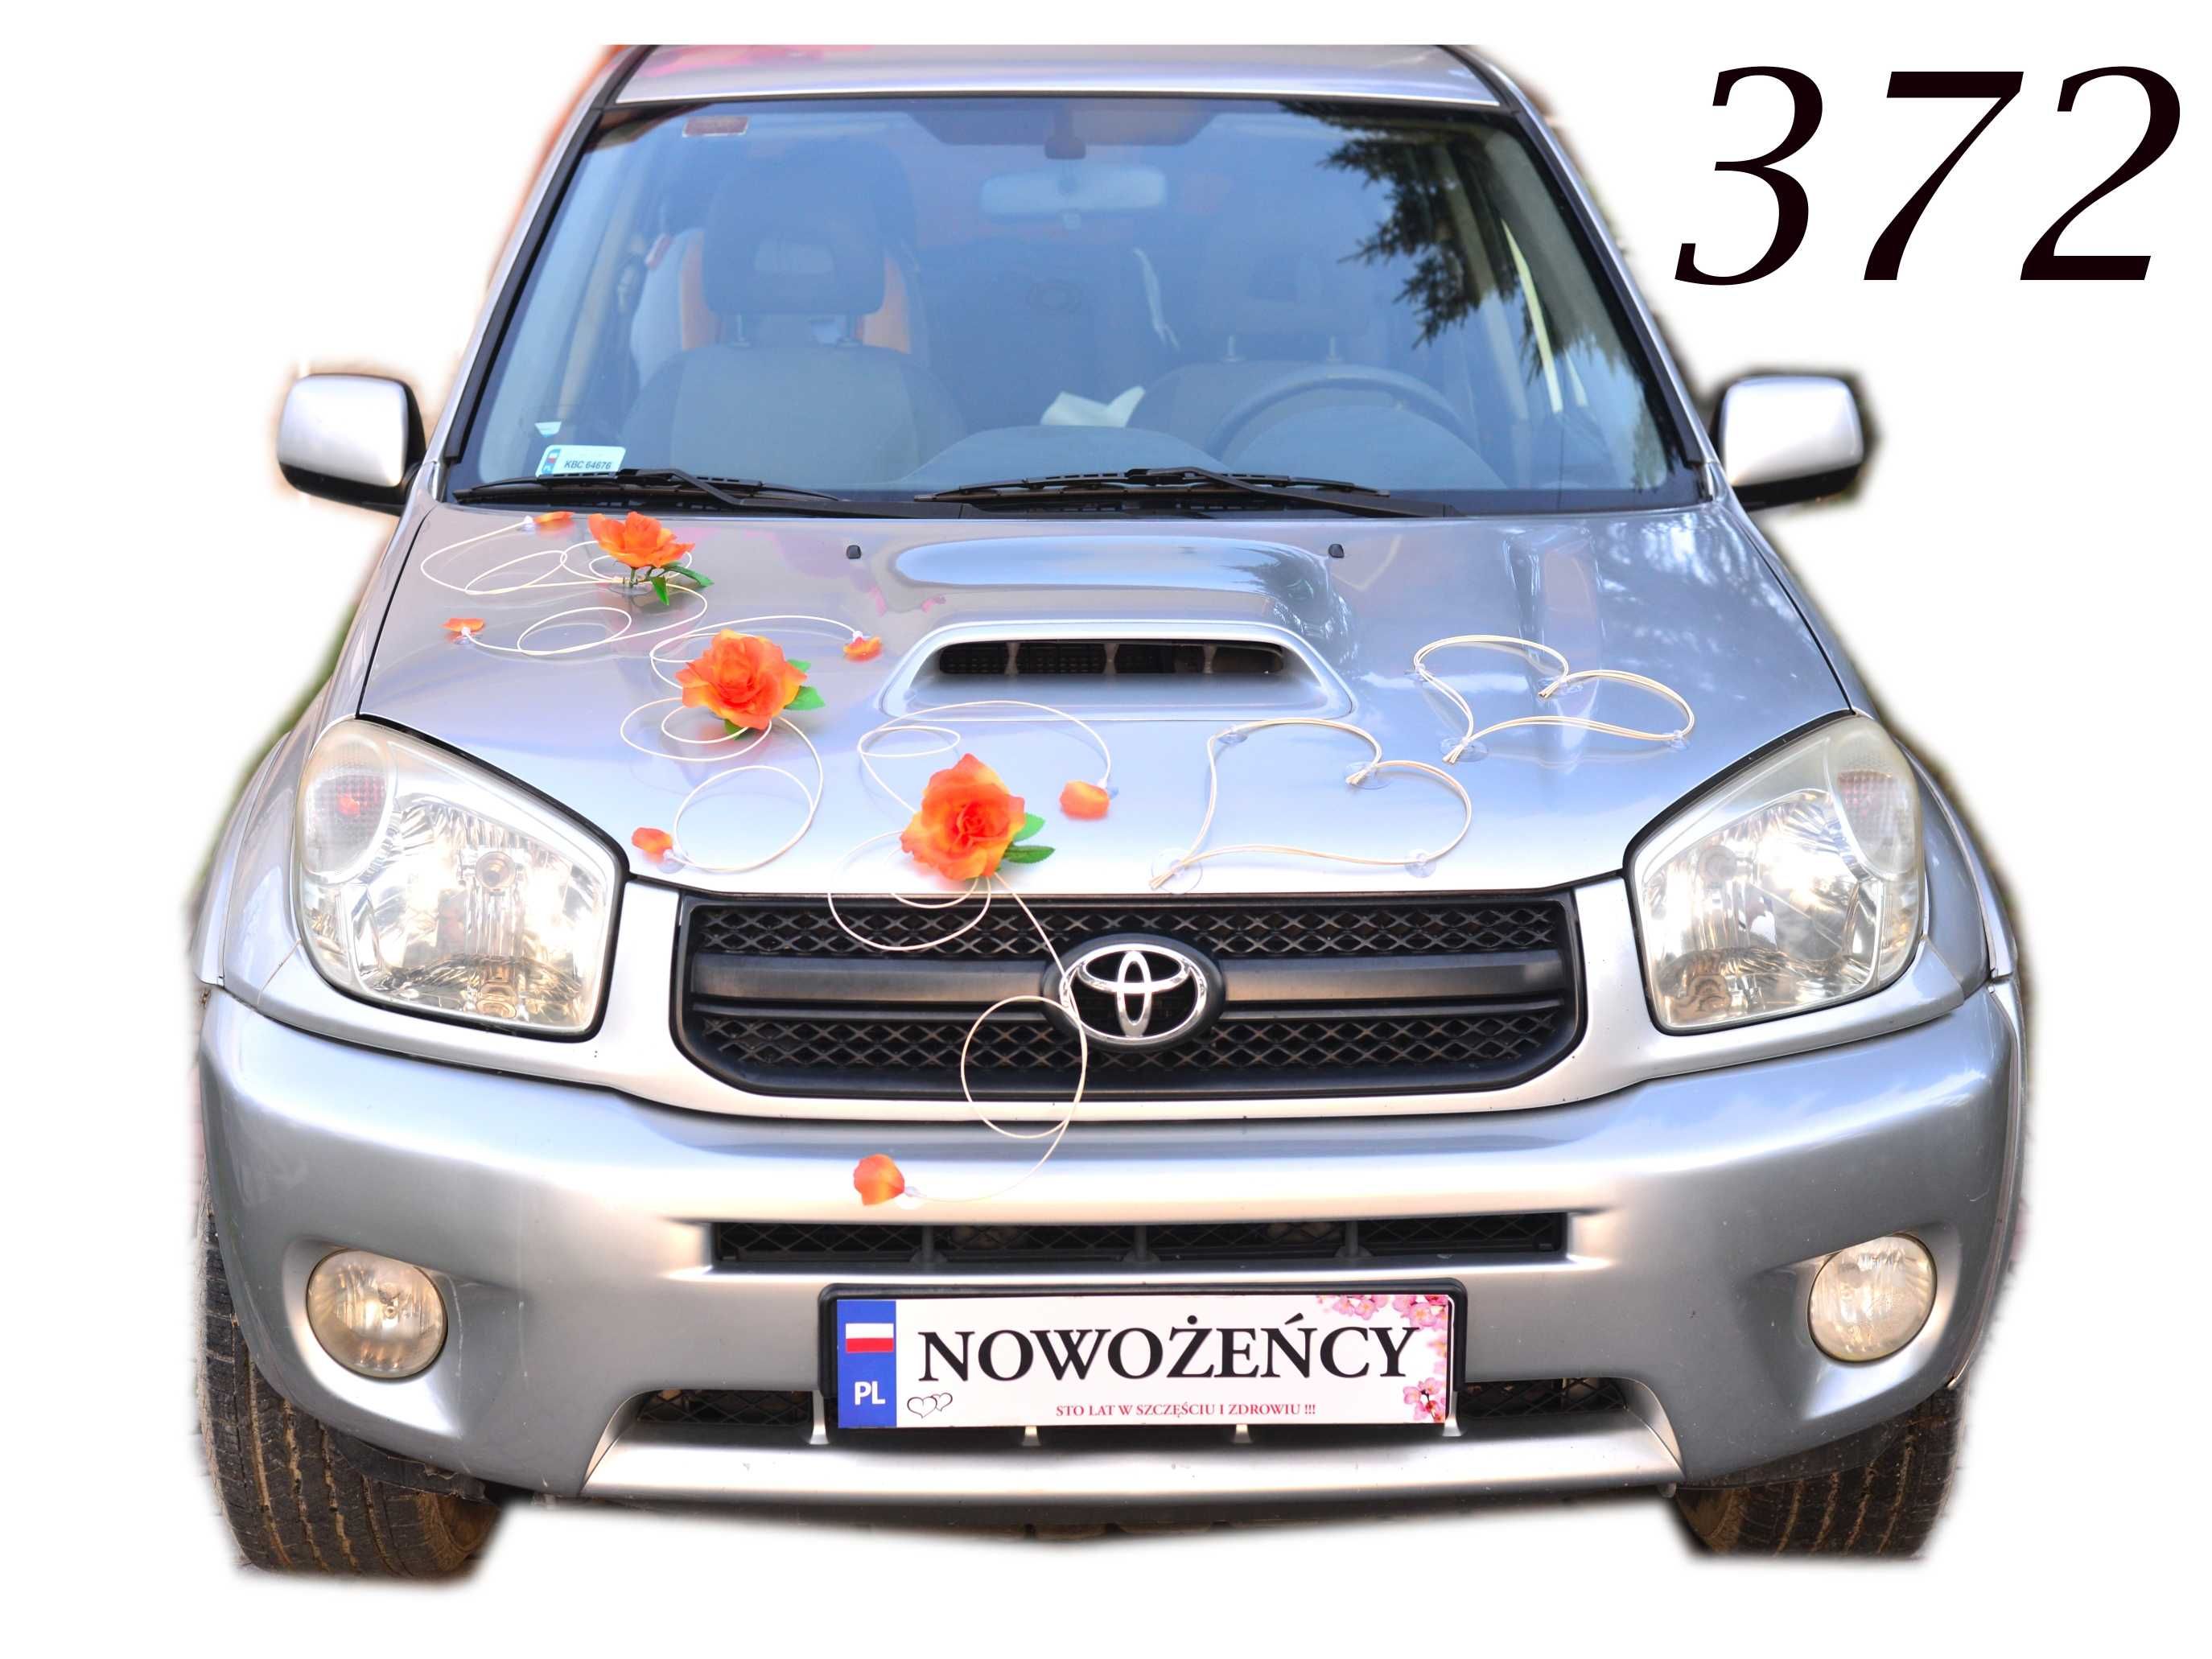 NOWA dekoracja na auto samochód ślub wesele Nr 372